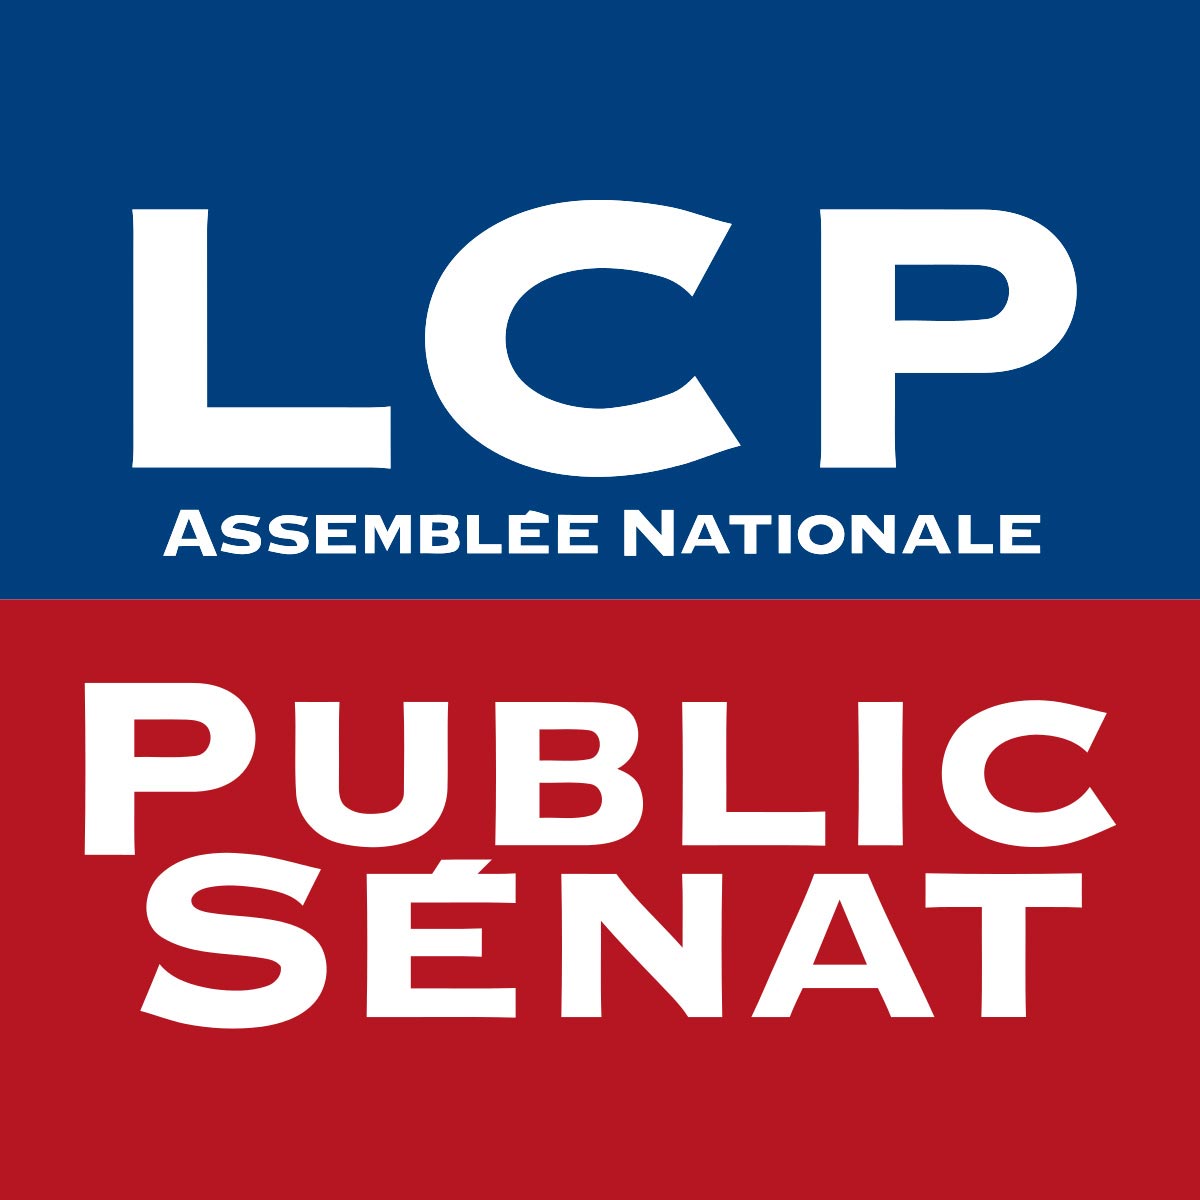 LCP / Public Sénat